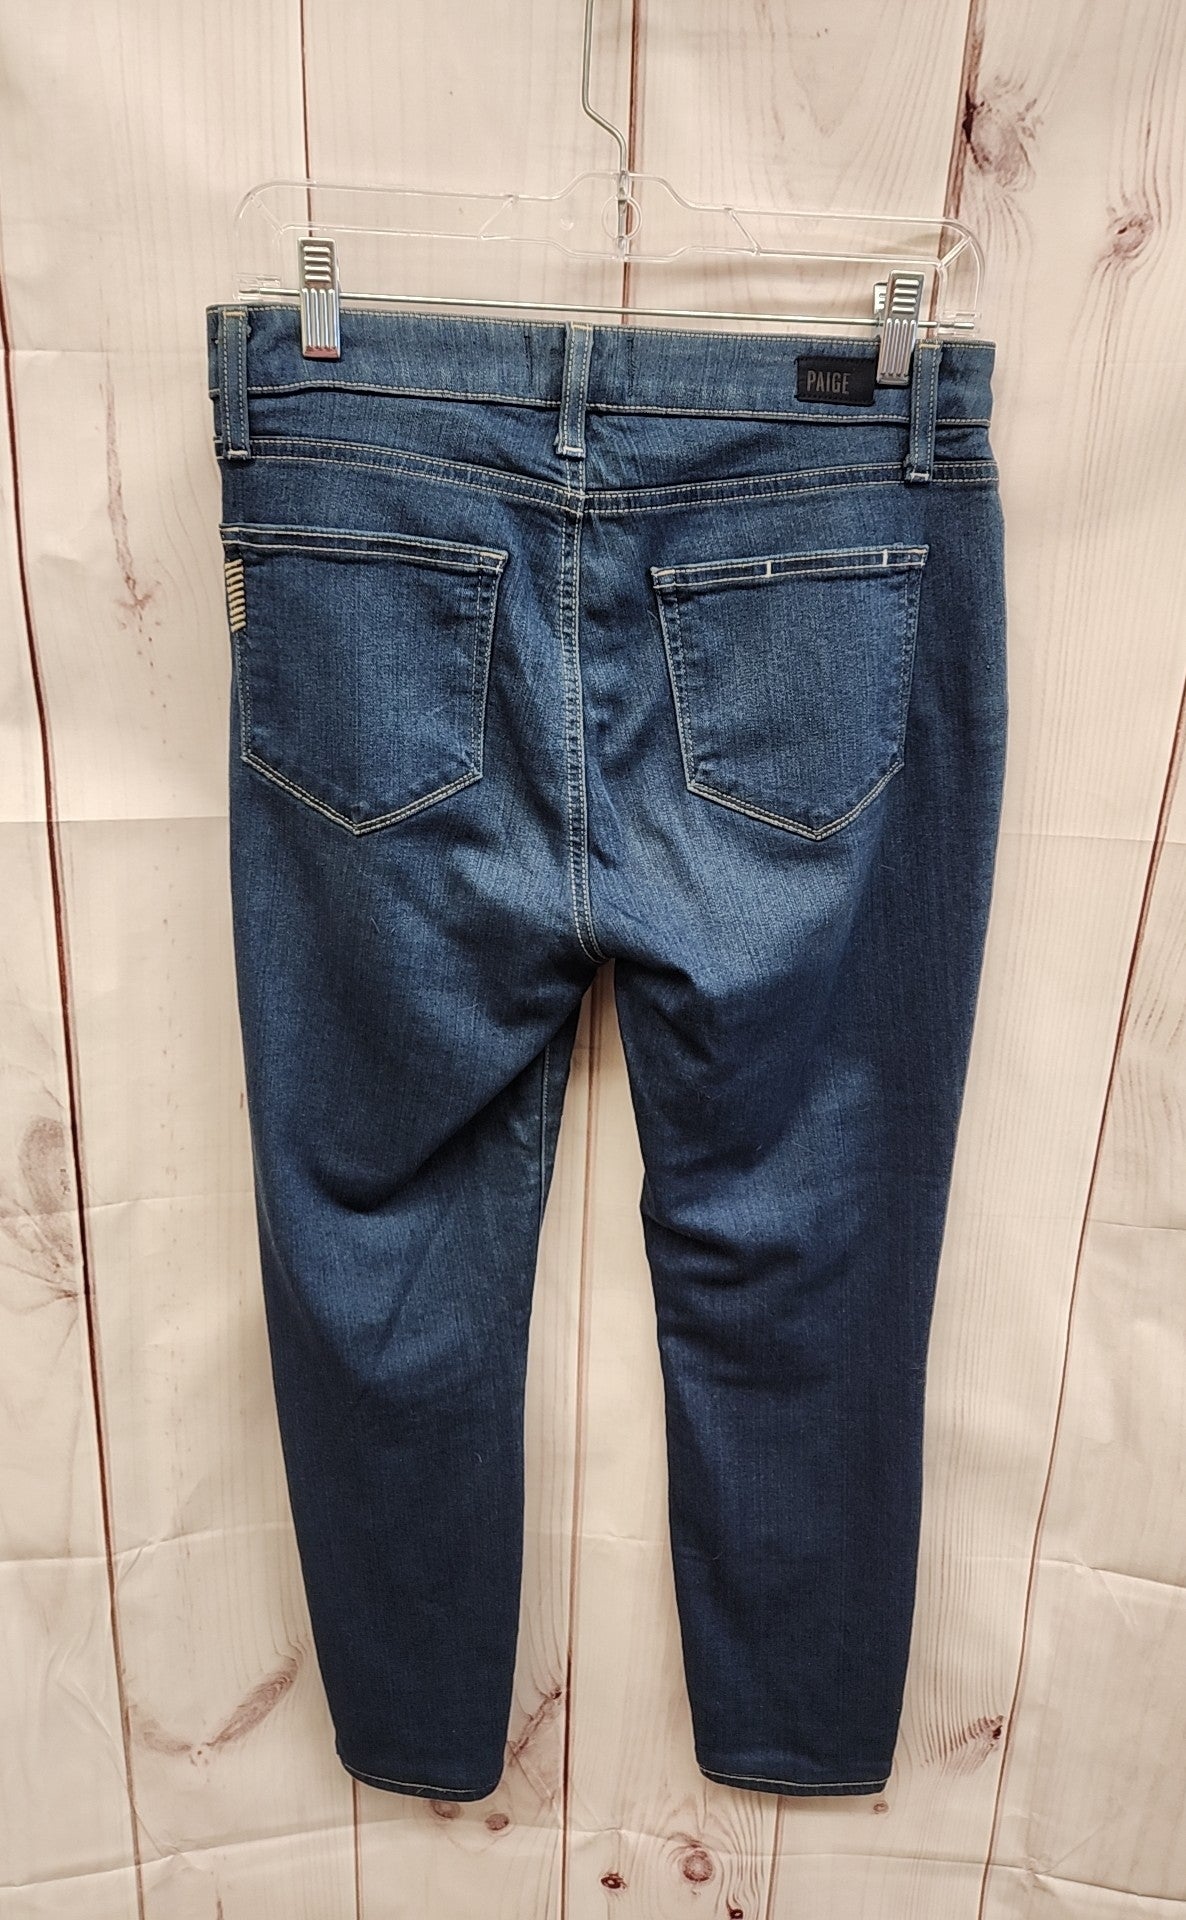 Paige Women's Size 28 (5-6) Blue Jeans